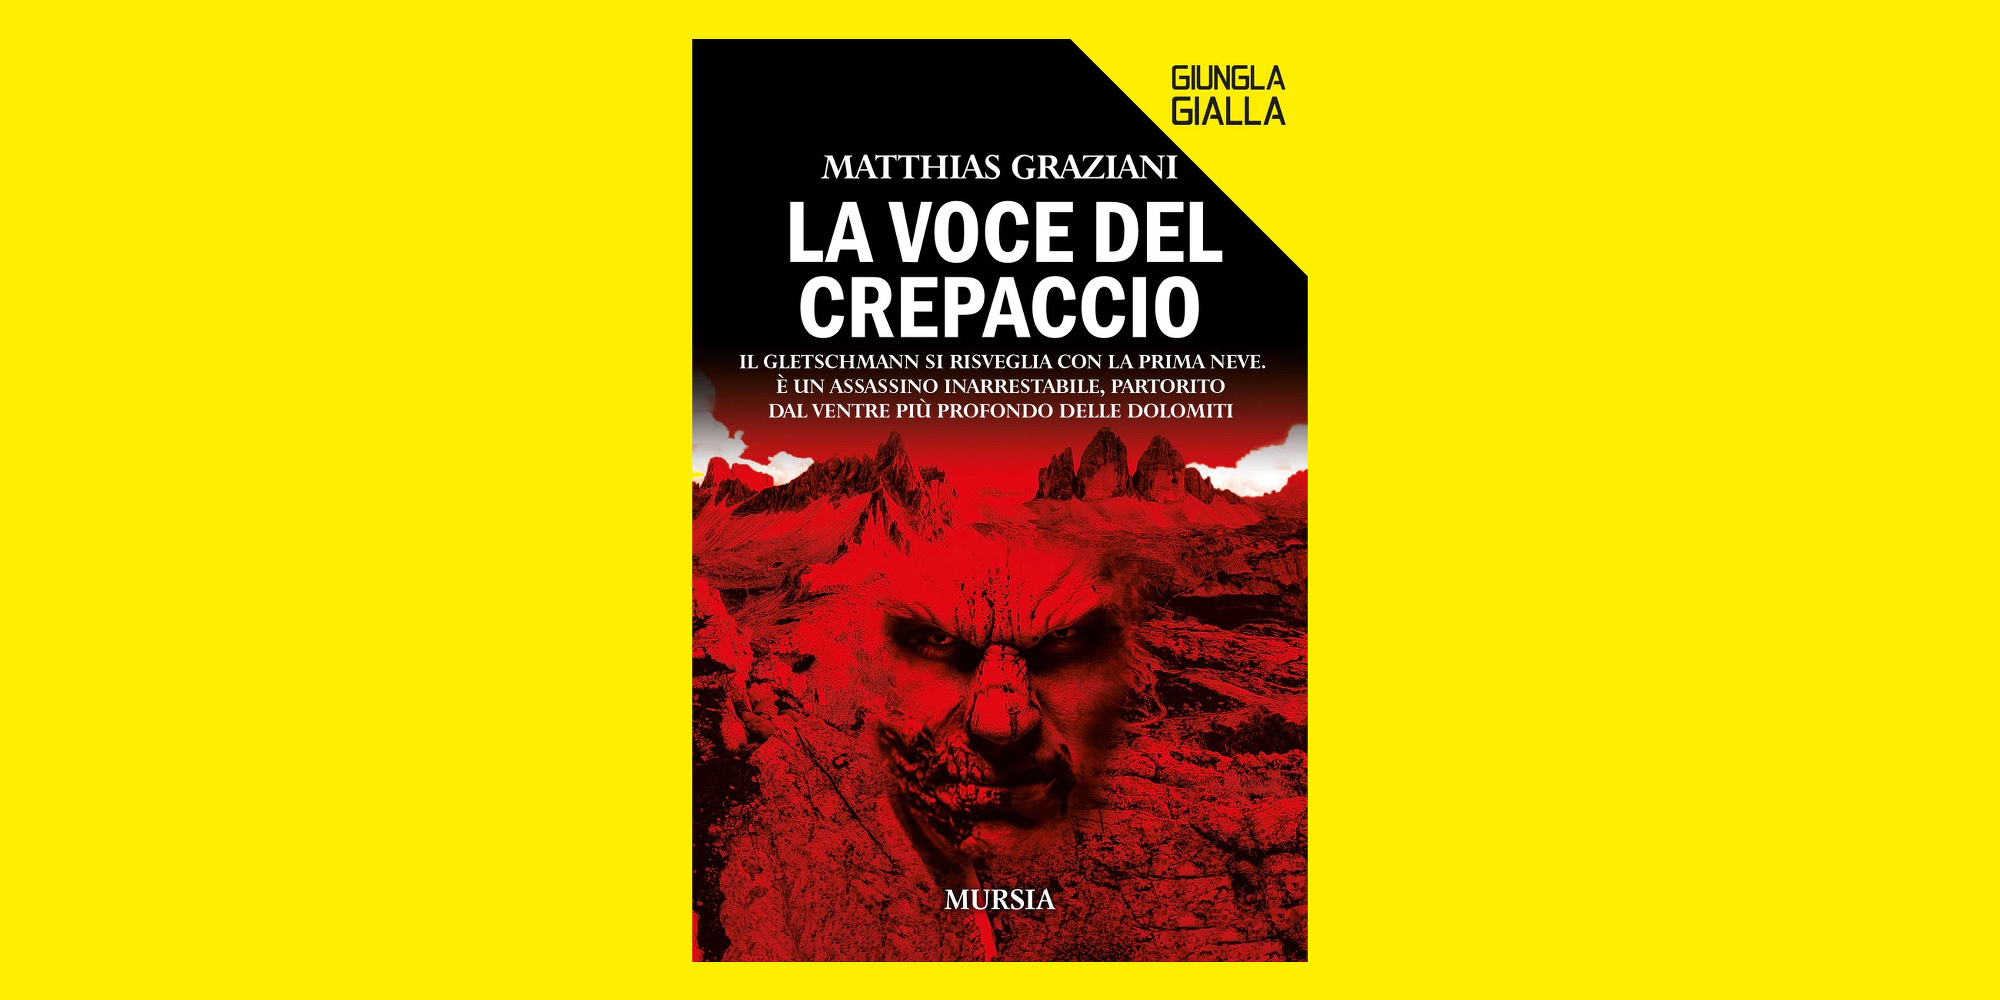 La voce del crepaccio, la recensione di Pierluigi Porazzi del romanzo di Matthias Graziani pubblicato da Mursia editore.